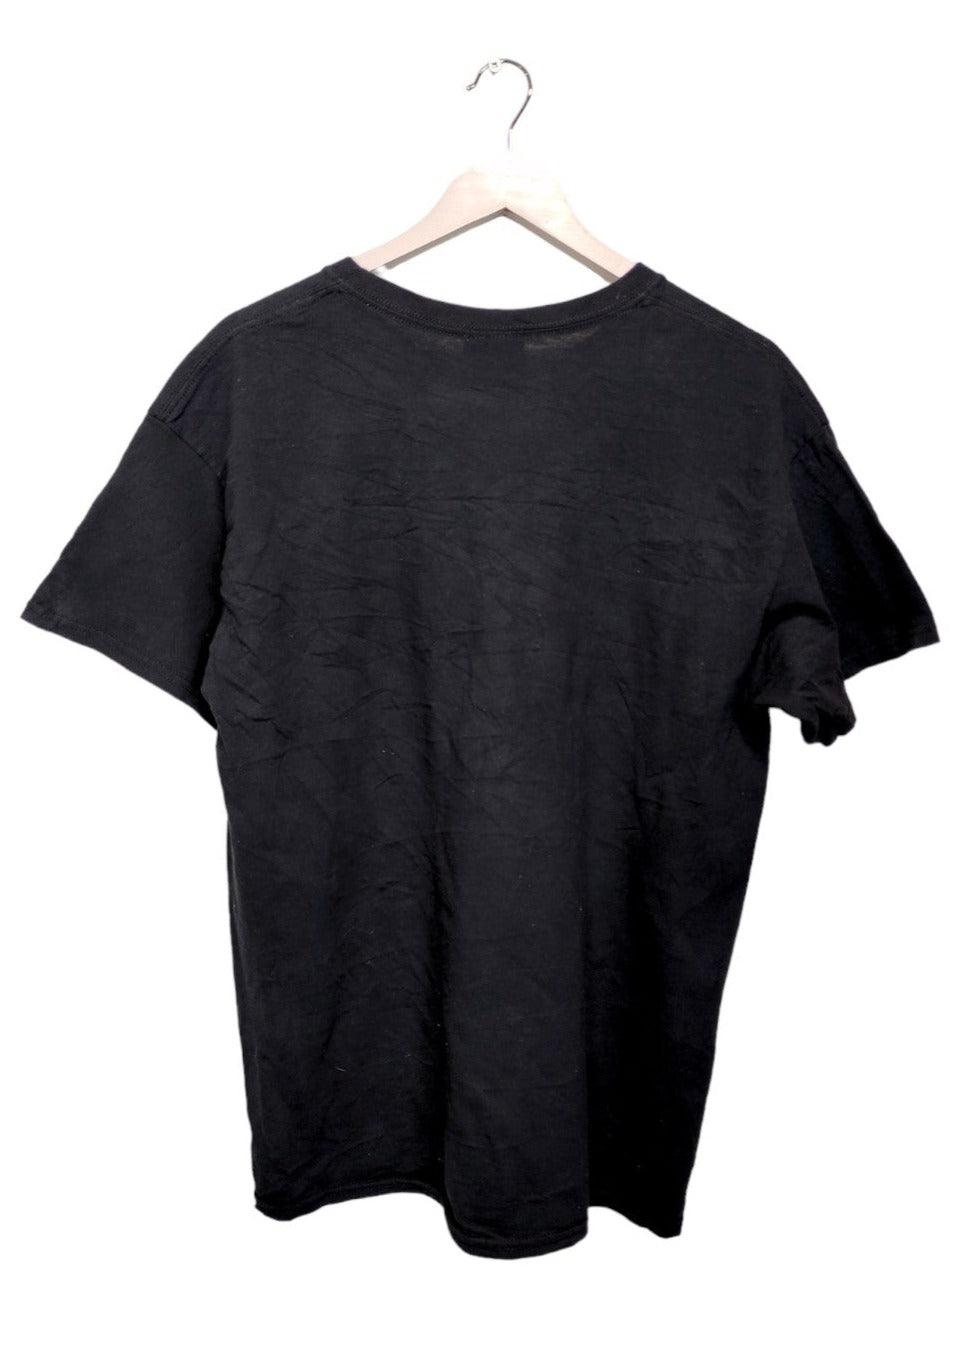 Ανδρική Μπλούζα - T- Shirt MV SPORT σε Μαύρο χρώμα (Large)